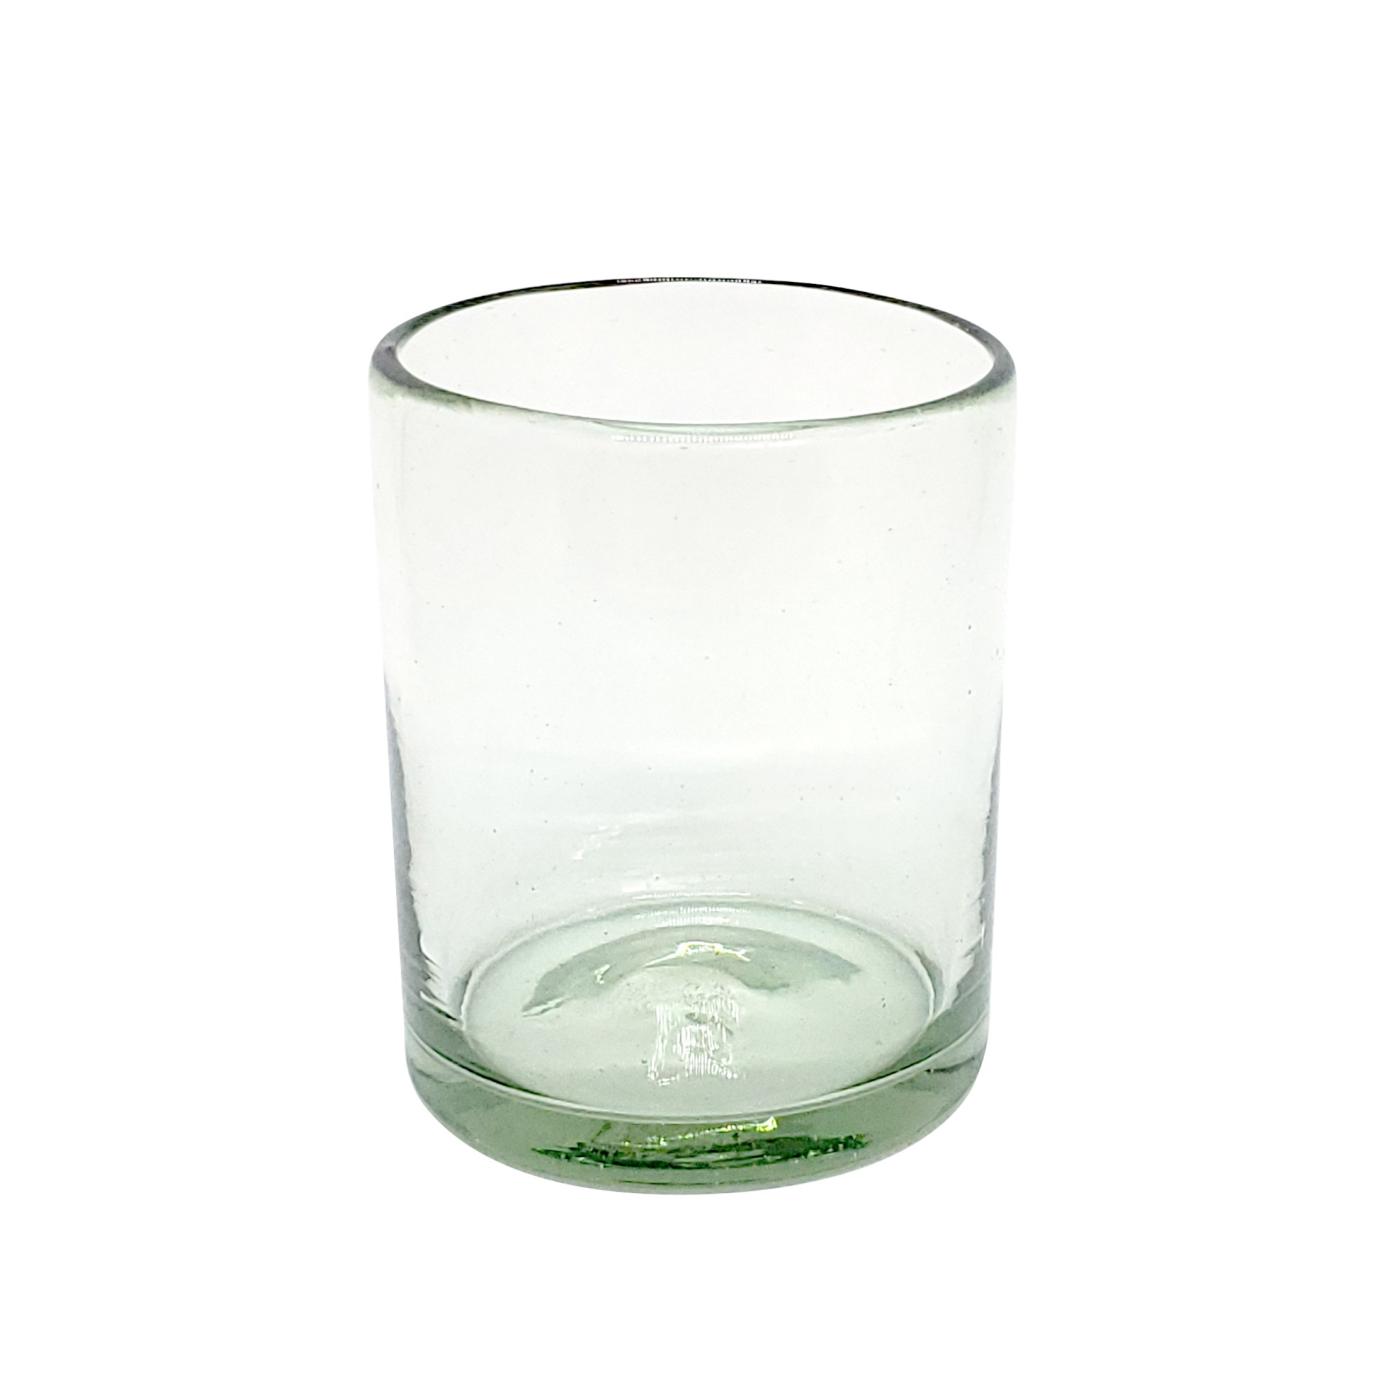 Color Transparente al Mayoreo / vasos chicos transparentes / Para una apariencia más tradicional, éstos vasos de vidrio soplado son creados de manera 100% artesanal.